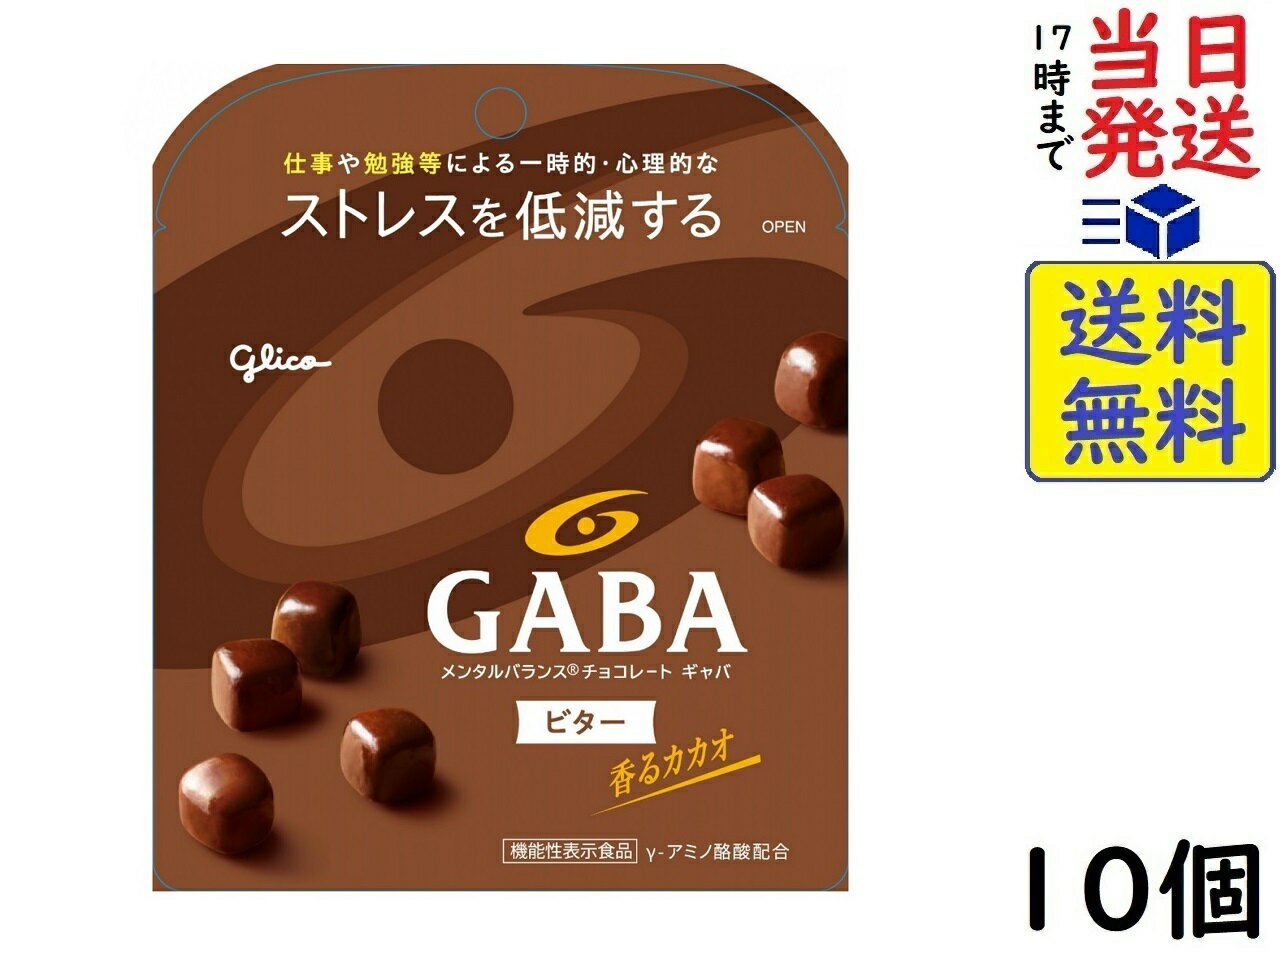 江崎グリコ GABA ギャバ(ビターチョコレート) スタンドパウチ 51g ×10個(機能性表示食品)賞味期限2025/02 1